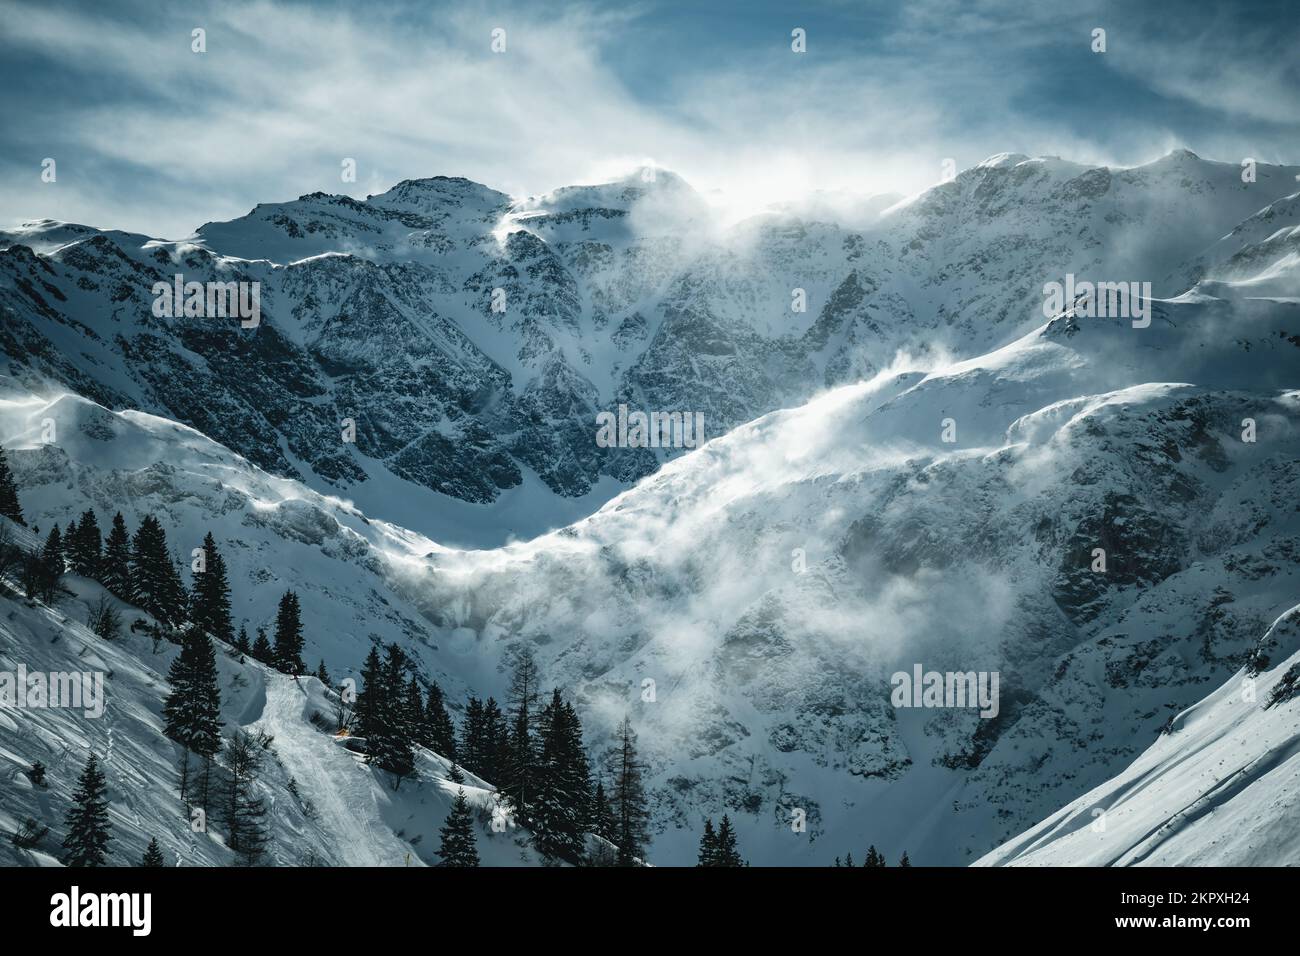 Clouds over mountain landscape in Austrian Alps, Gastein, Salzburg, Austria Stock Photo